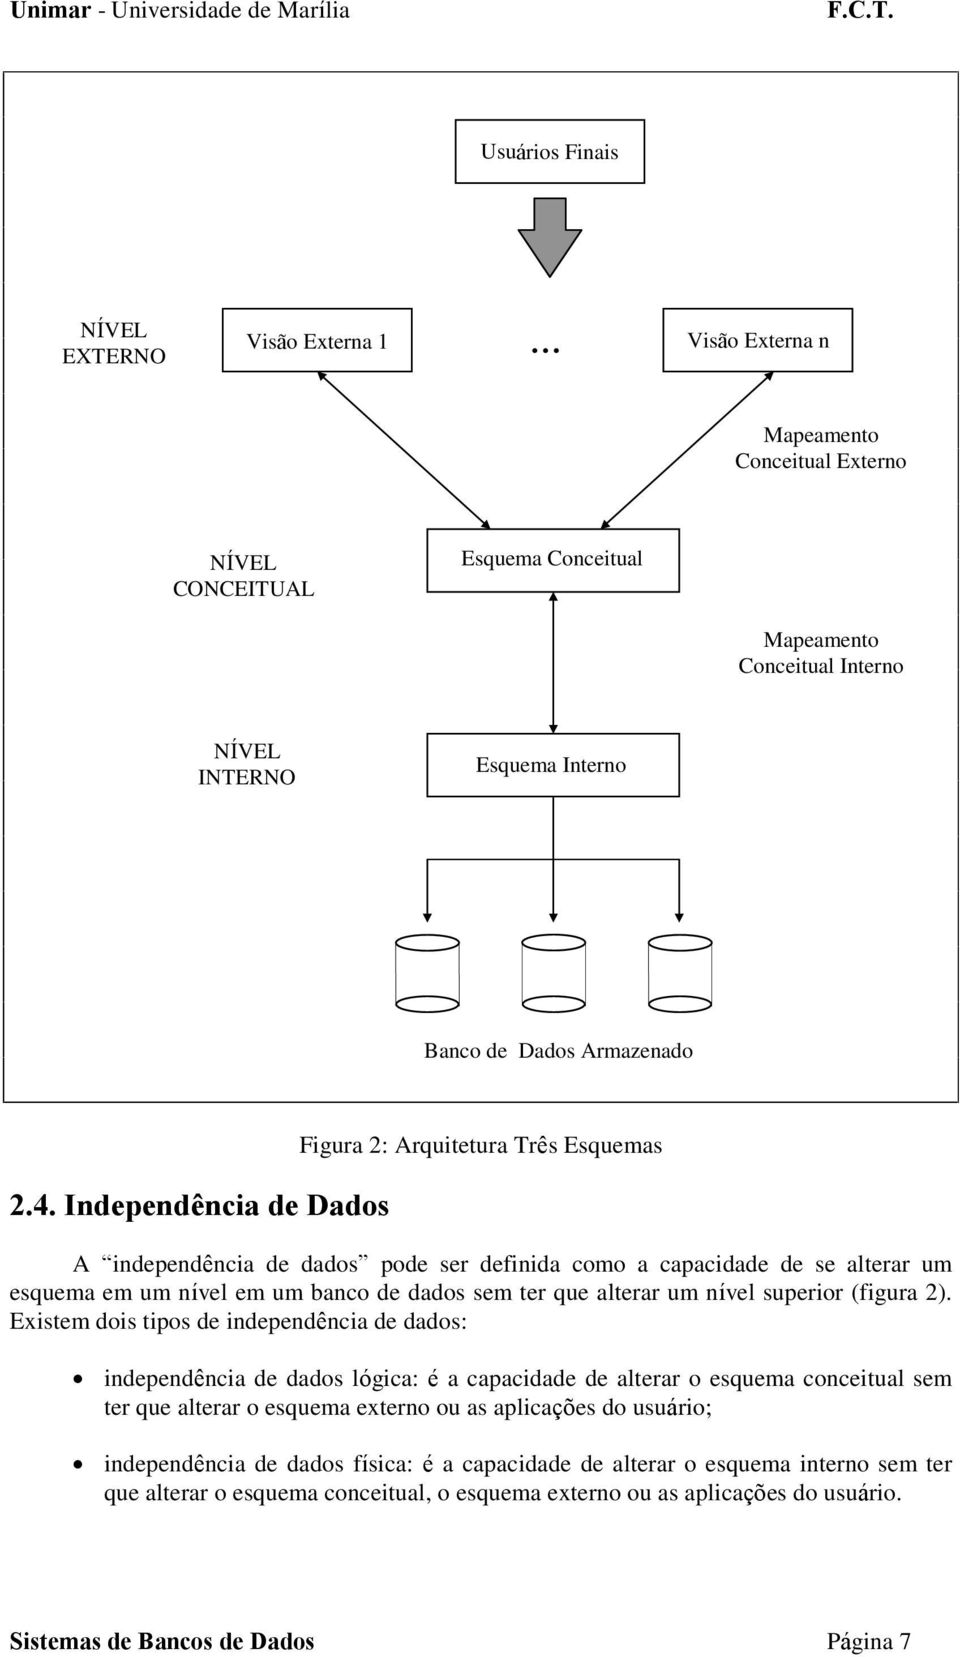 Independência de Dados Figura 2: Arquitetura Três Esquemas A independência de dados pode ser definida como a capacidade de se alterar um esquema em um nível em um banco de dados sem ter que alterar